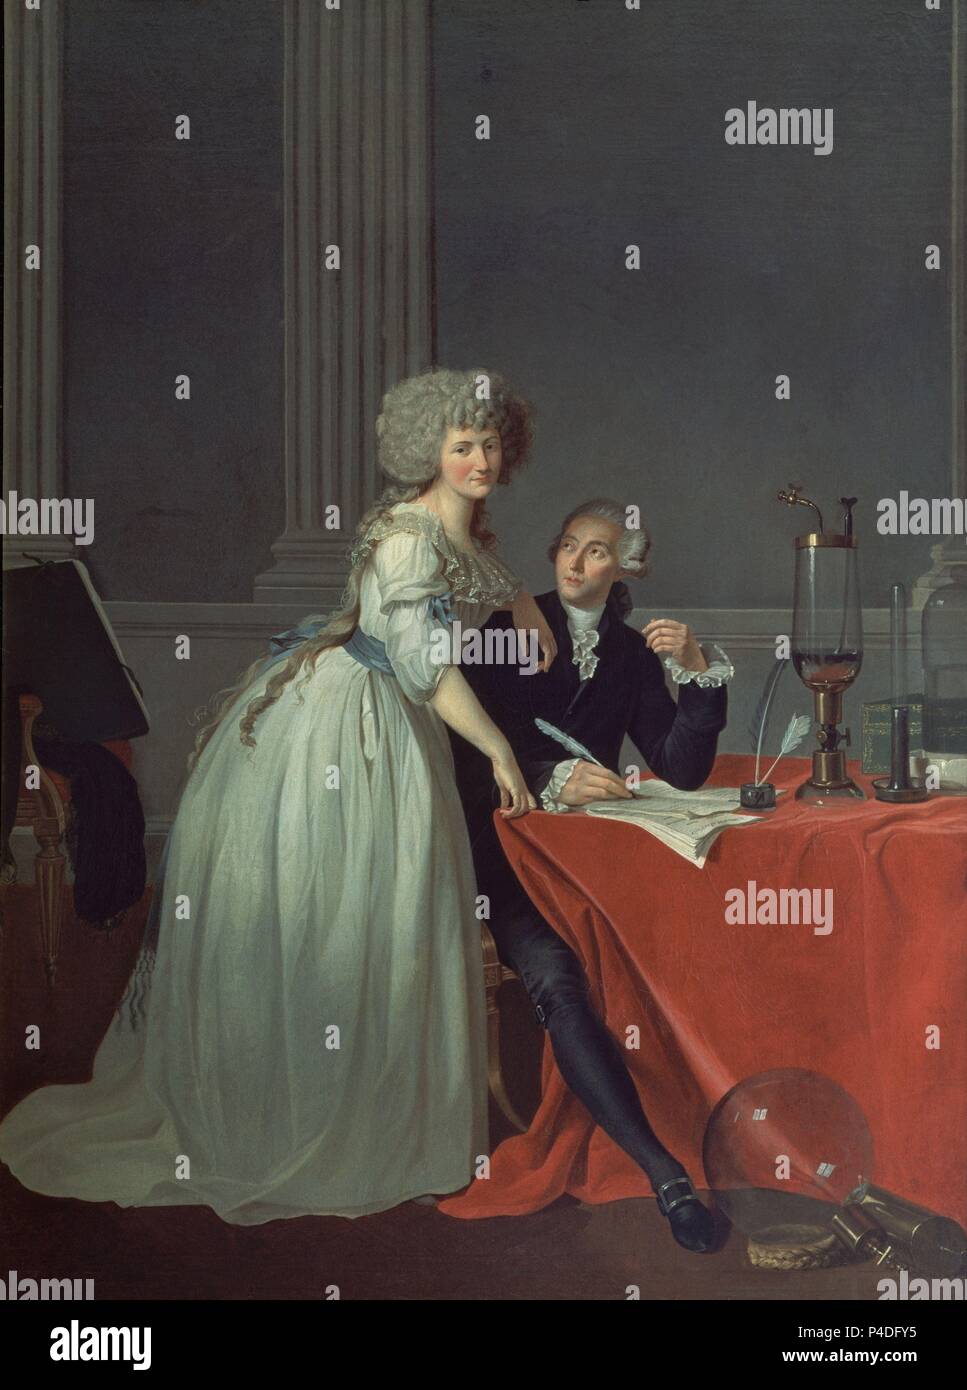 "Portrait von Antoine-Lauren Lavoisier und seiner Frau", 1788, Öl auf Leinwand, 102 x 76 cm. Autor: Jacques Louis David (1748-1825). Lage: Metropolitan Museum of Art, New York. Stockfoto